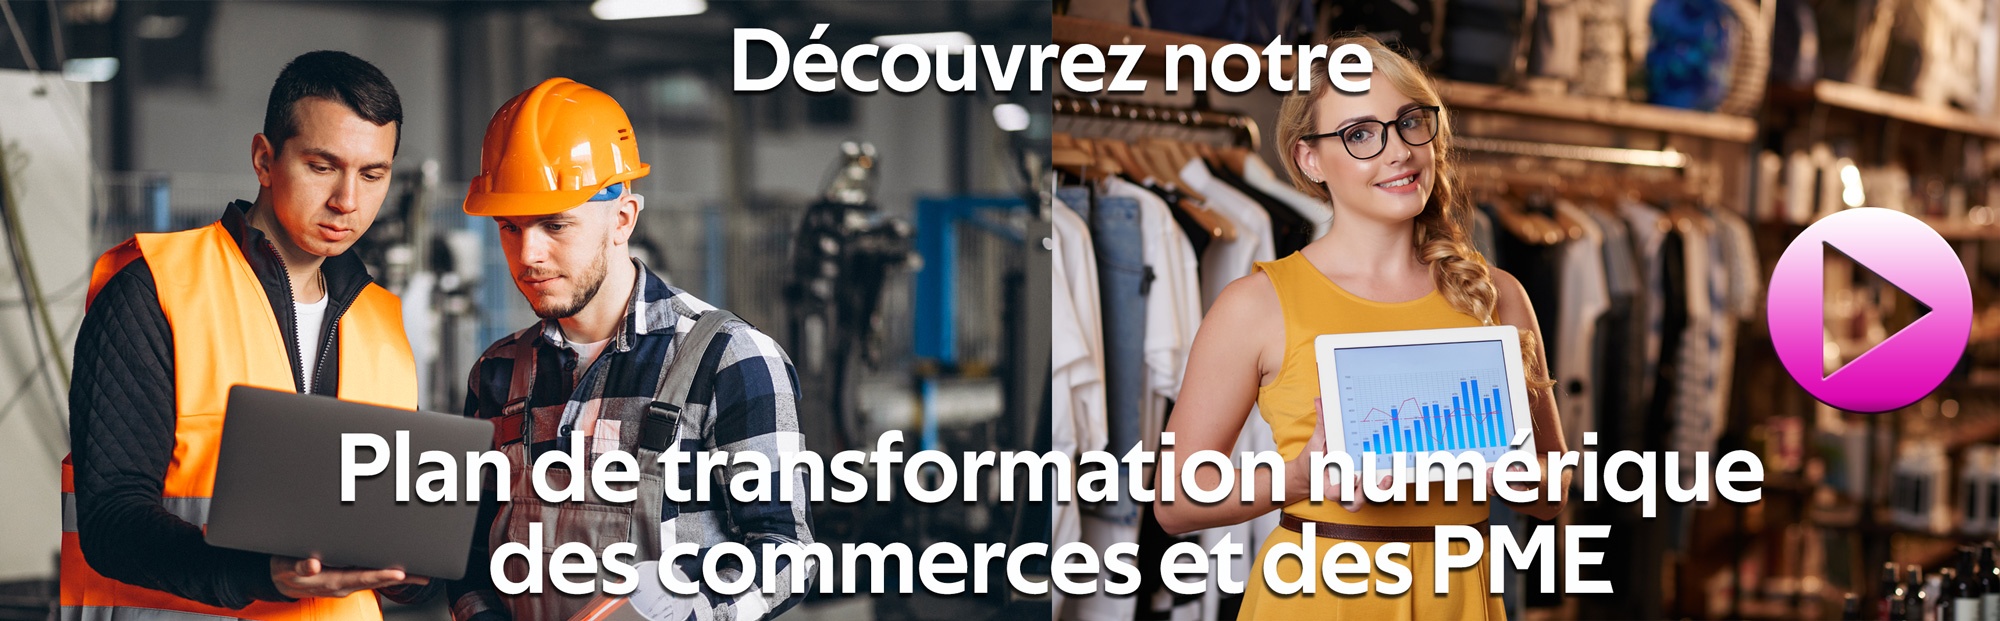 plan de transformation numérique des commerces et des PME agence stratégies rouen normandie marketing 360 creation de site e-commerce oxatis formation OPCO CPF